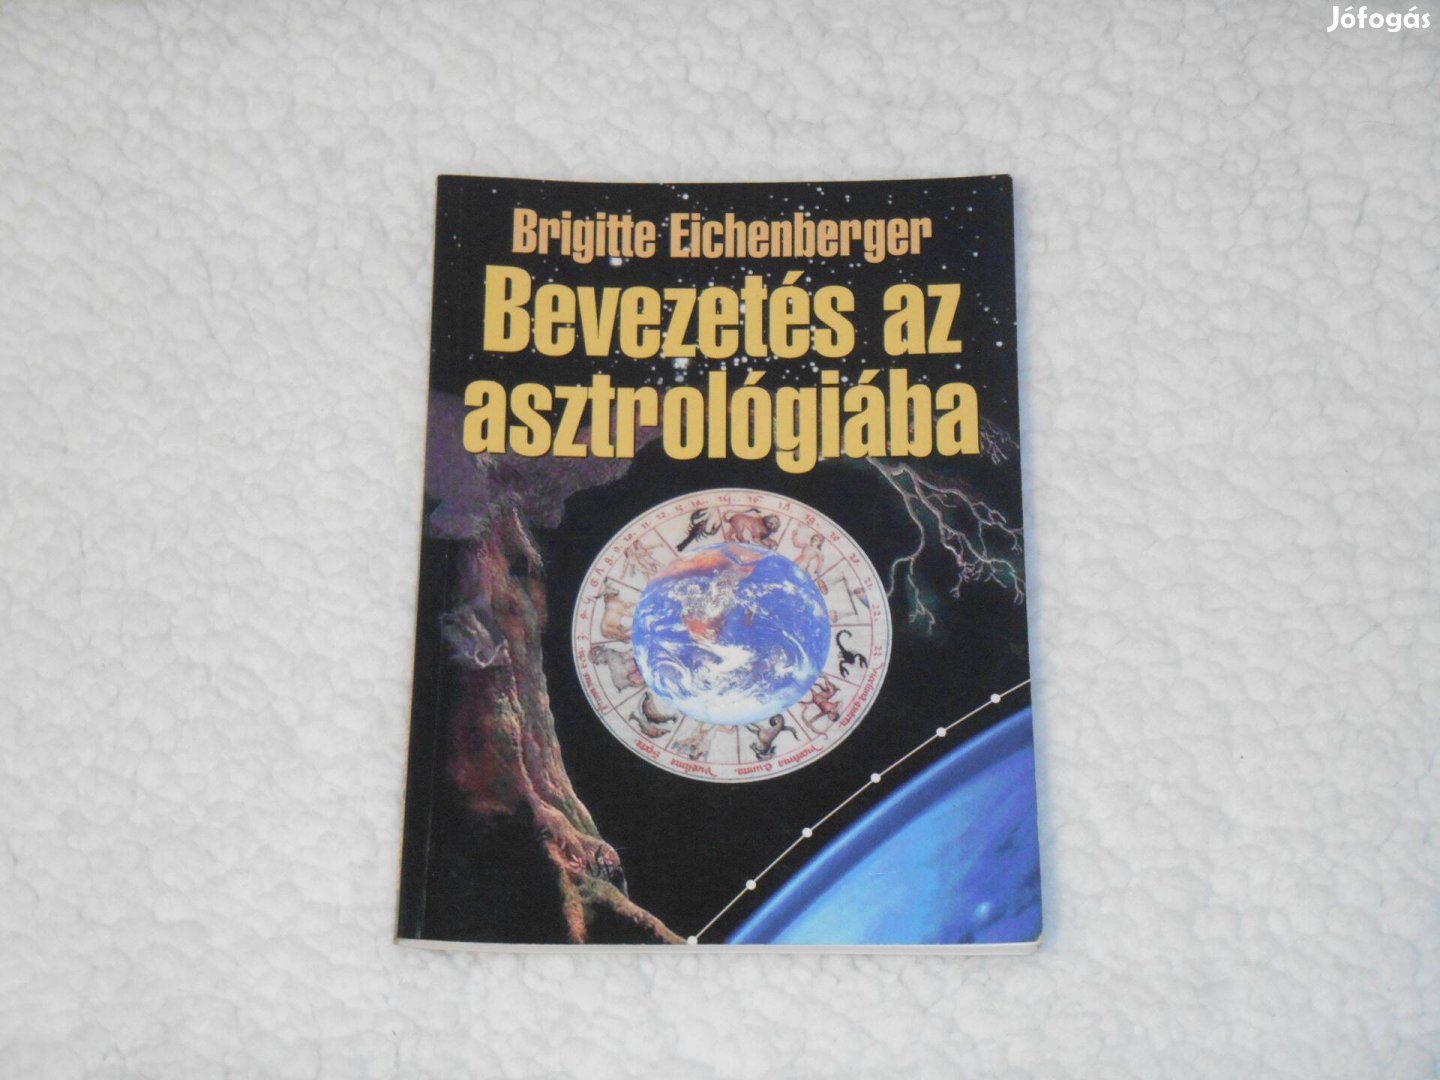 Brigitte Eichenberger - Bevezetés az asztrológiába